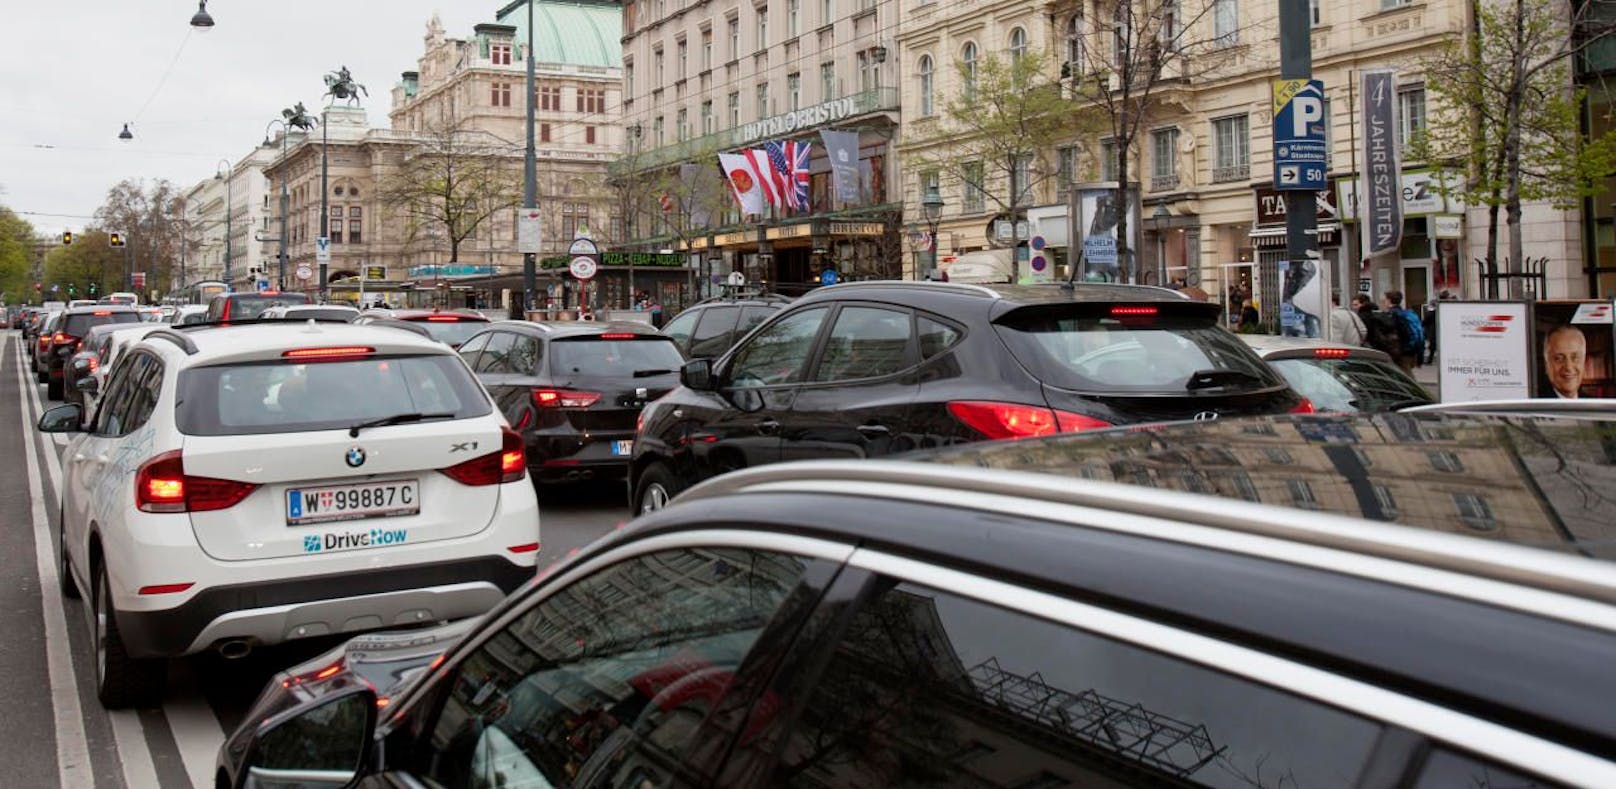 Am Dienstag wird ein Verkehrstau in Wien befürchtet.